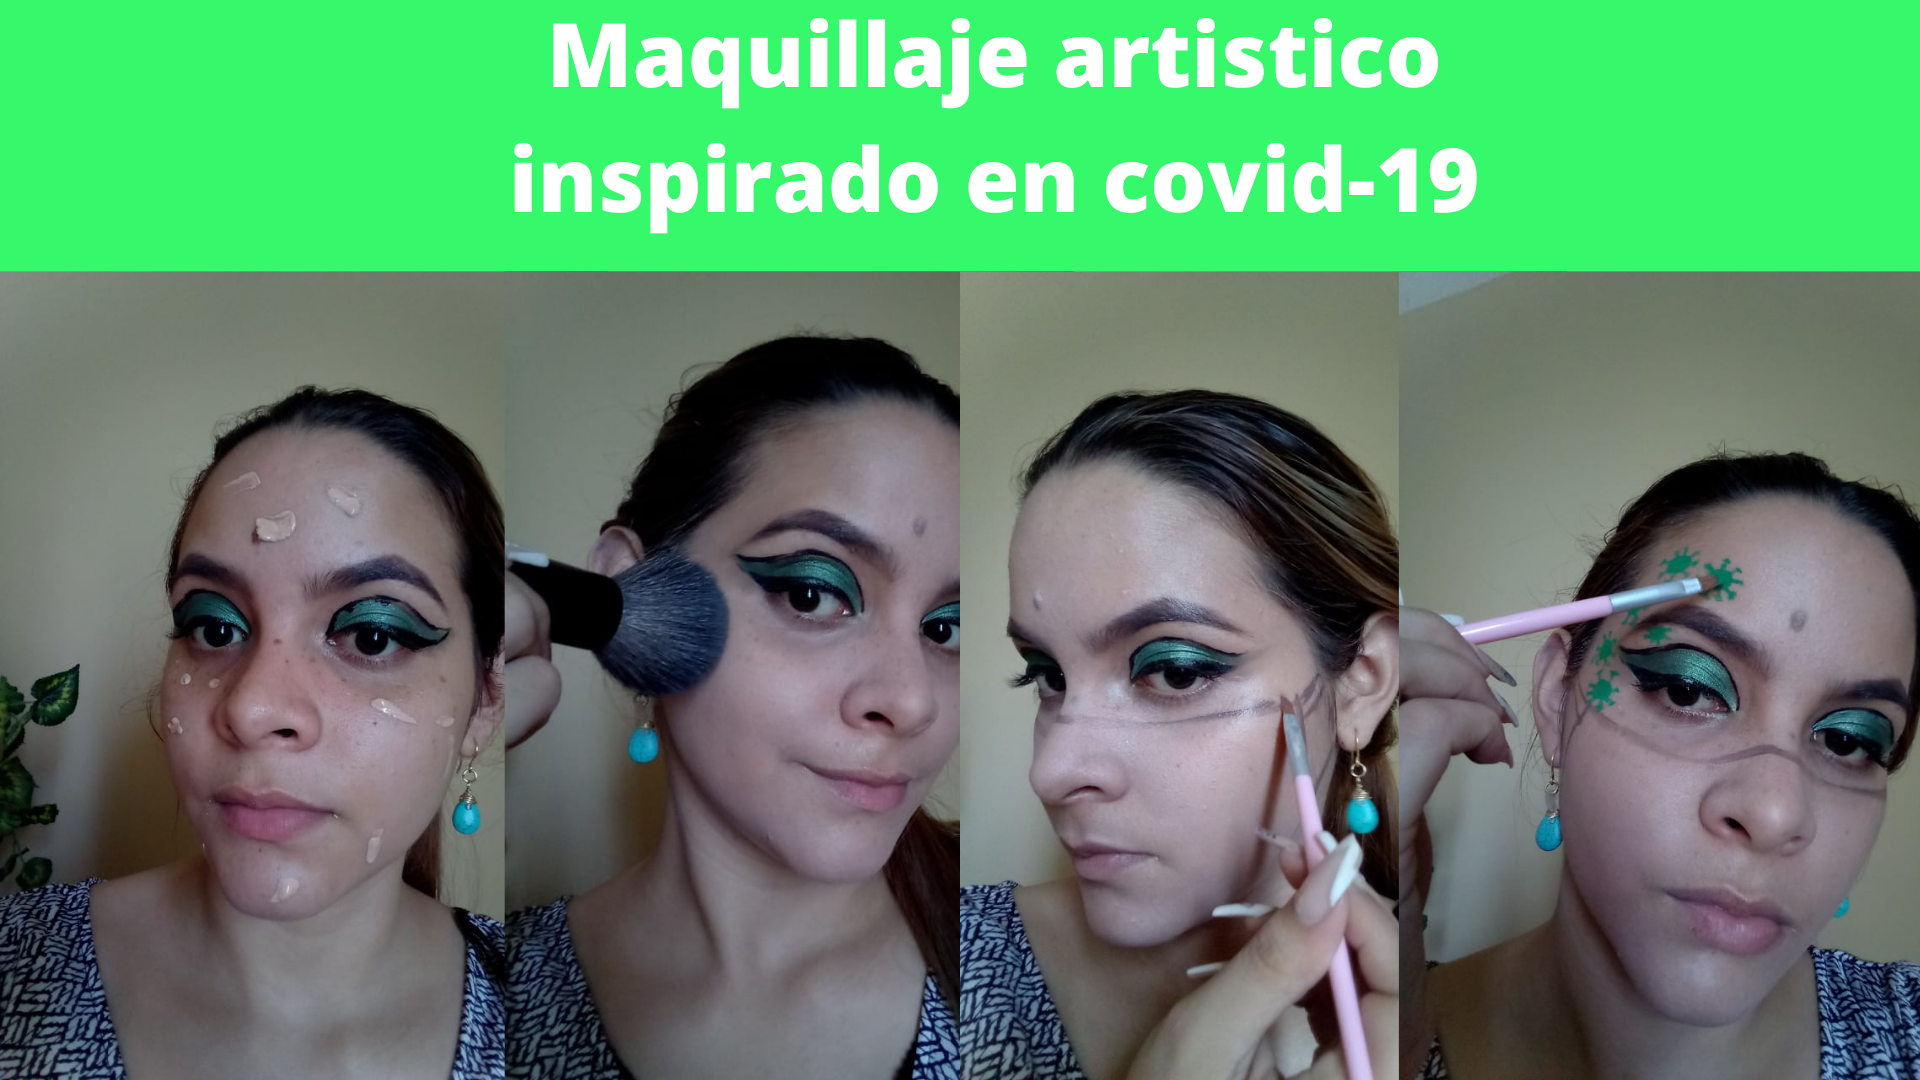 Maquillaje artistico inspirado en covid-19 (2).png